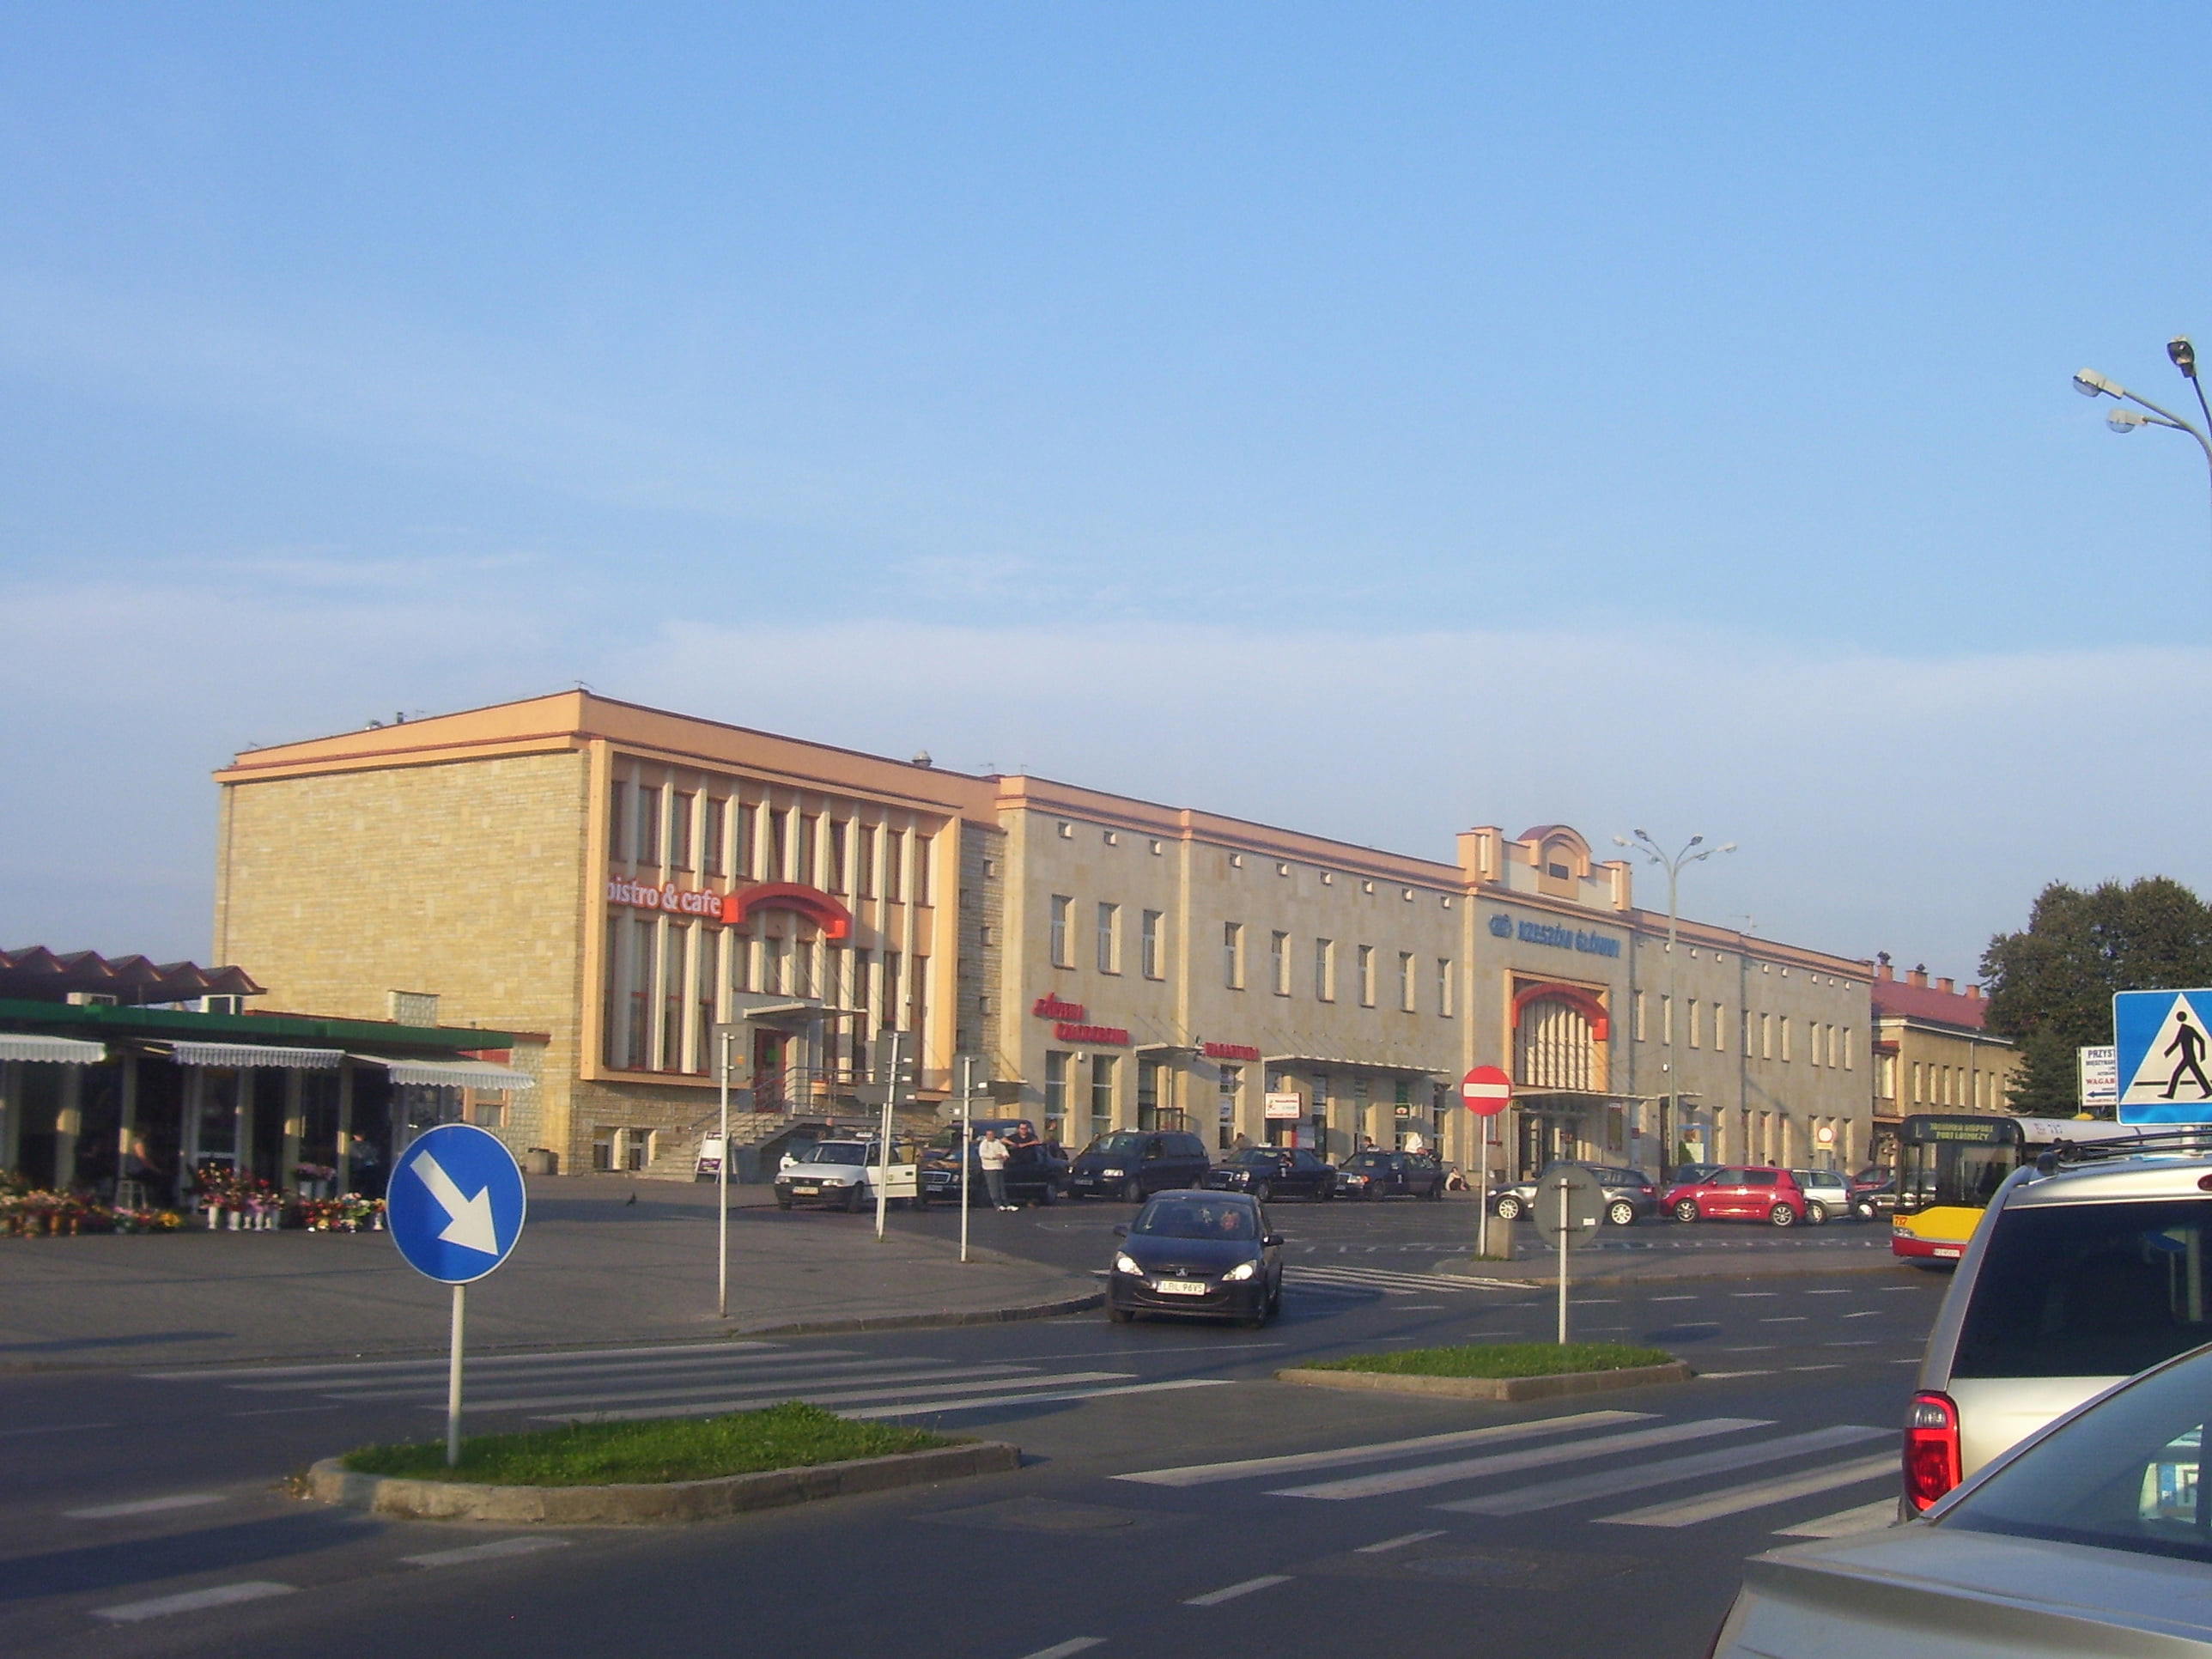 Rzeszów Main Railway Station